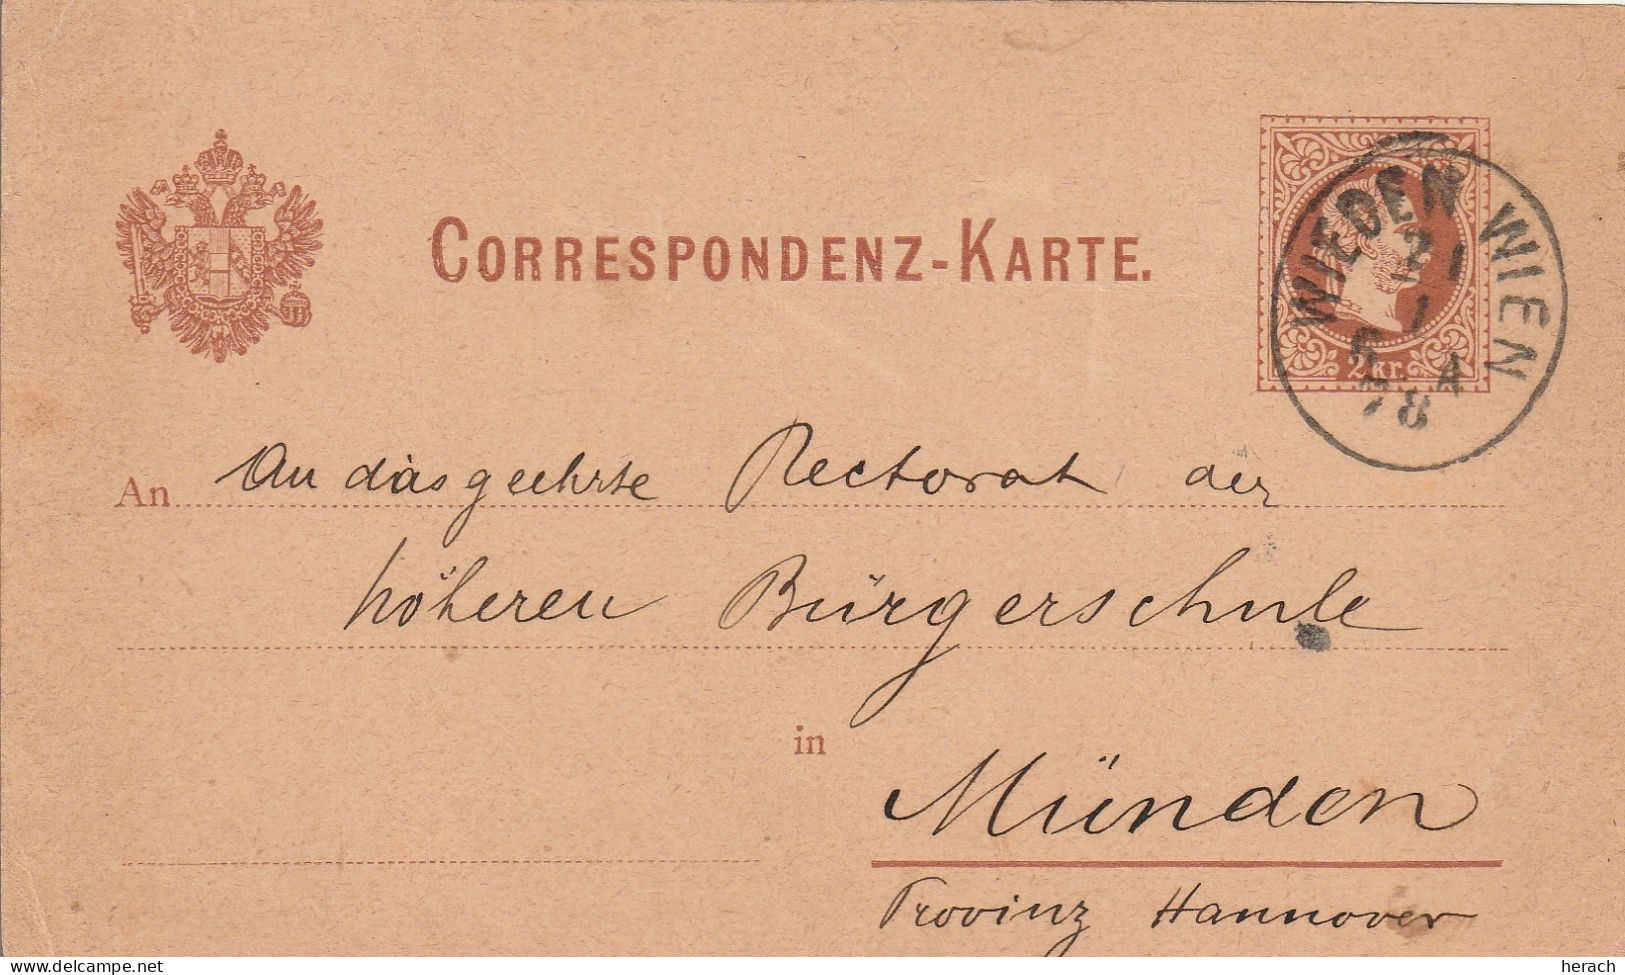 Autriche Entier Postal Wieden Wien 1878 - Briefkaarten